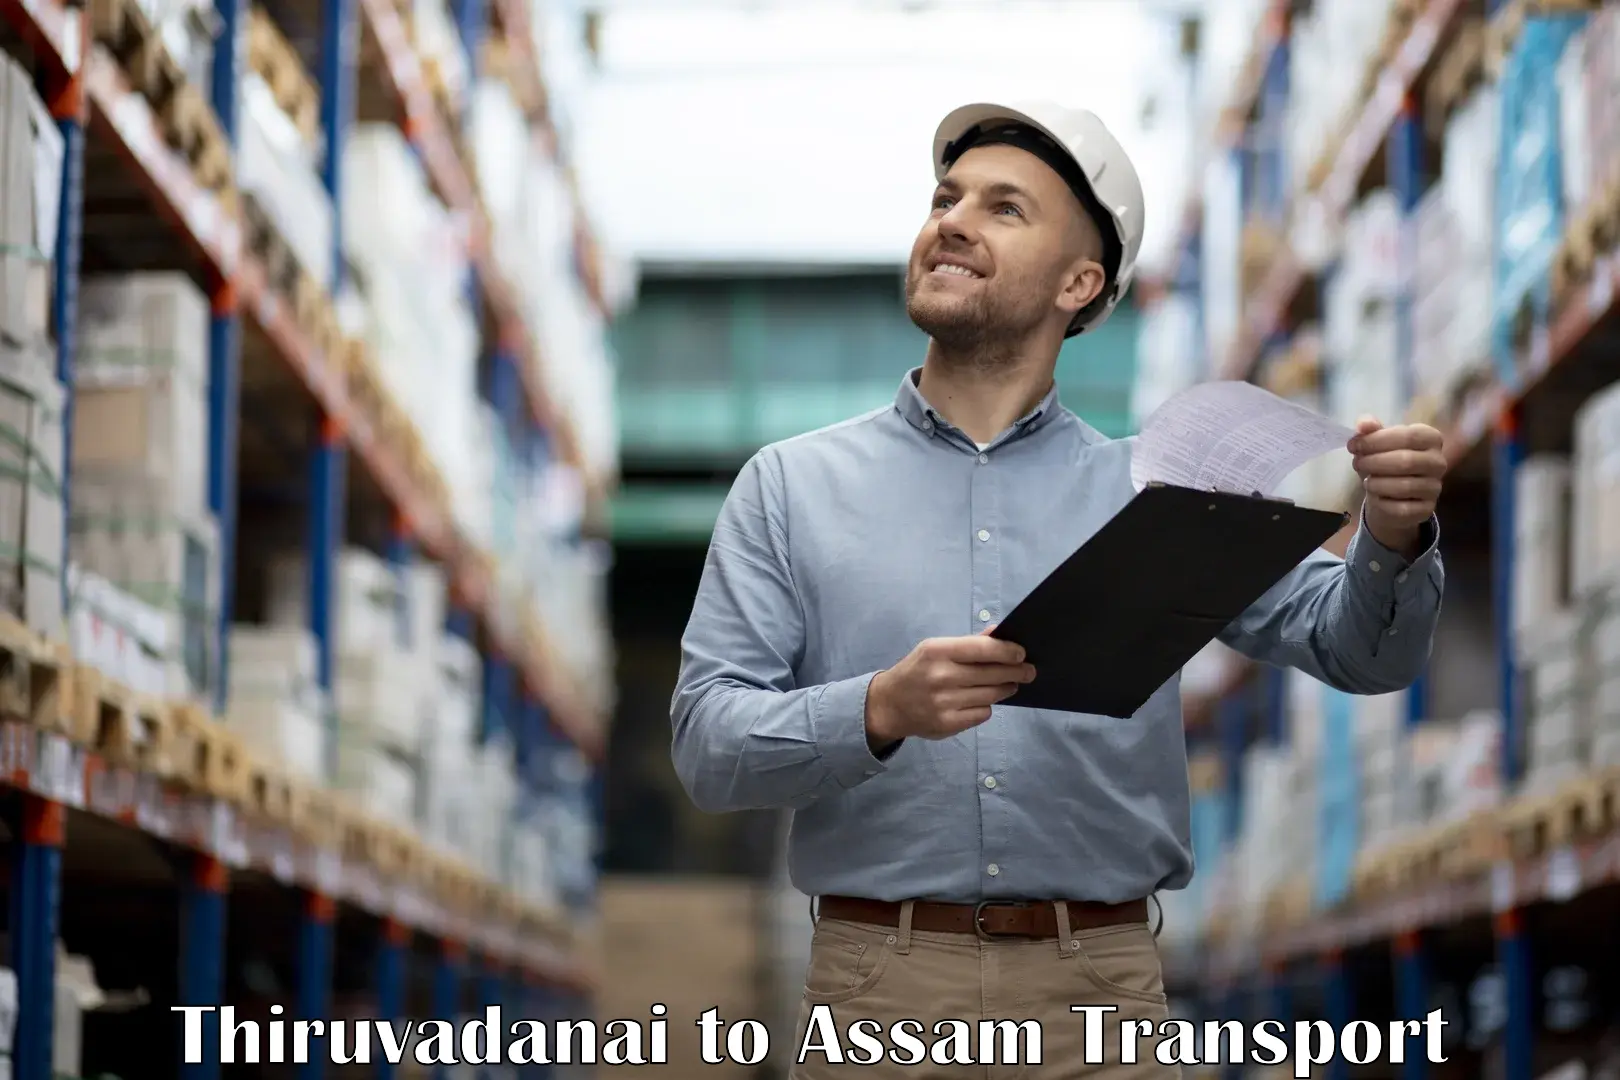 Furniture transport service Thiruvadanai to Nalbari